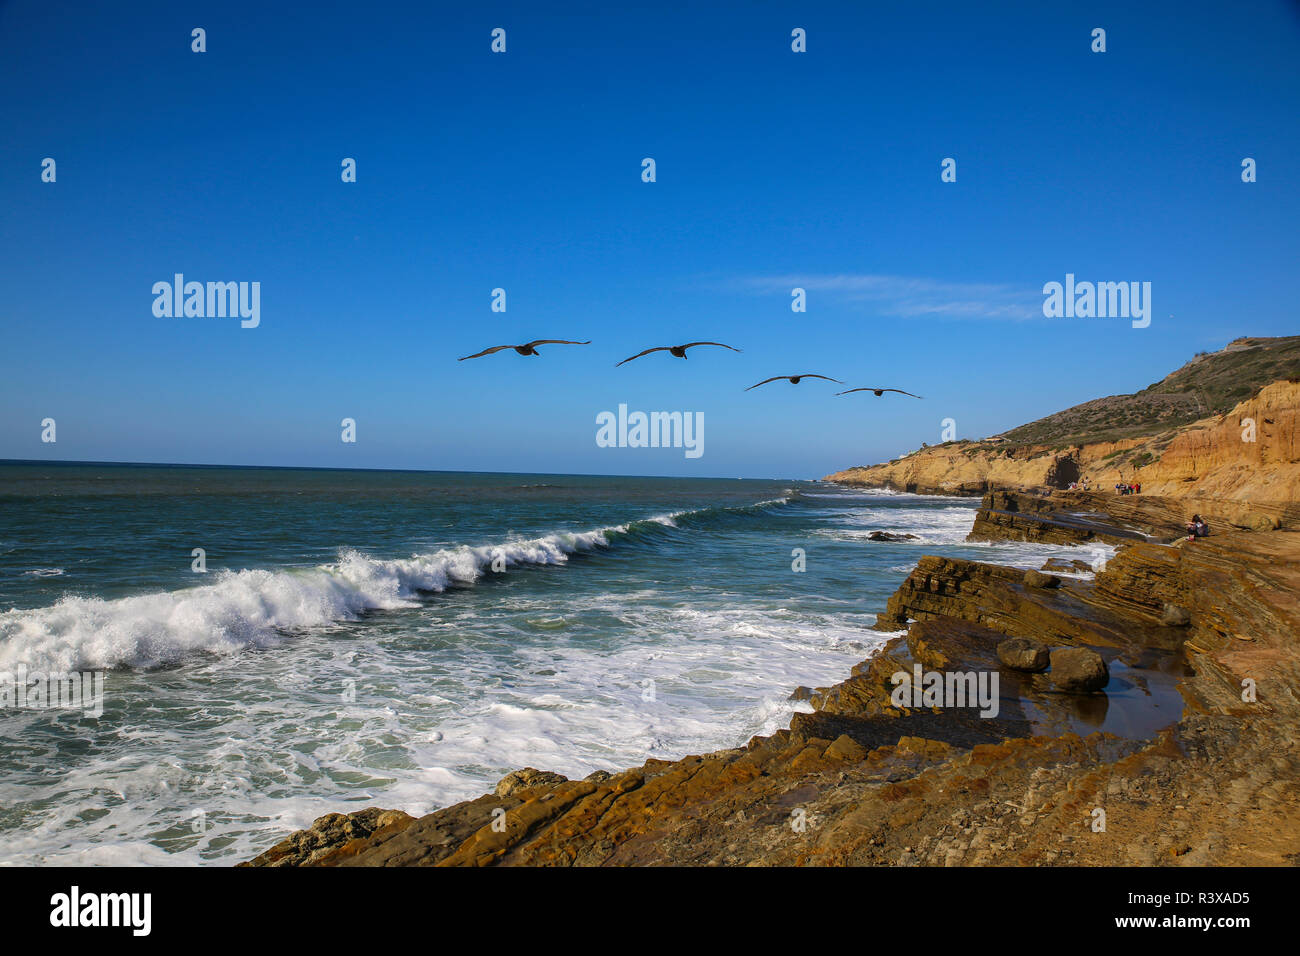 San Diego, Californie. Les pélicans volent au-dessus de falaises et surfez à Point Cabrillo Lomo Tide Pools Banque D'Images